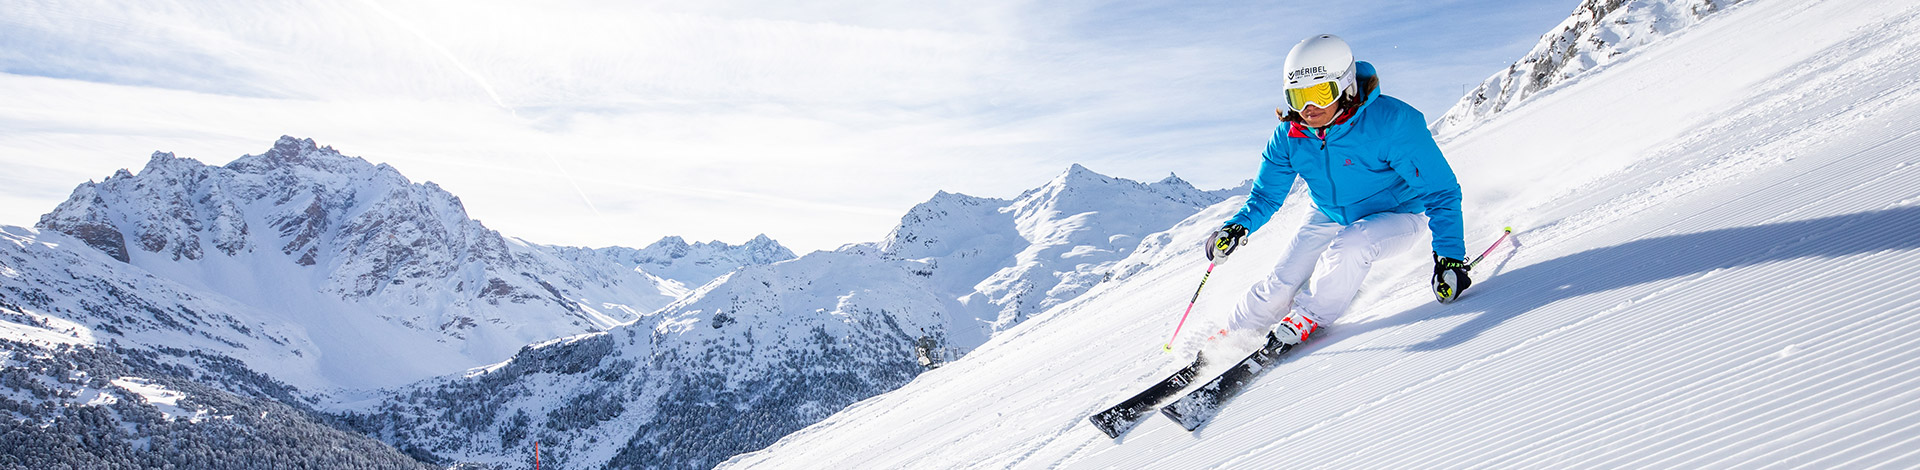 Les 3 Vallées c'est une garantie ski de décembre à avril